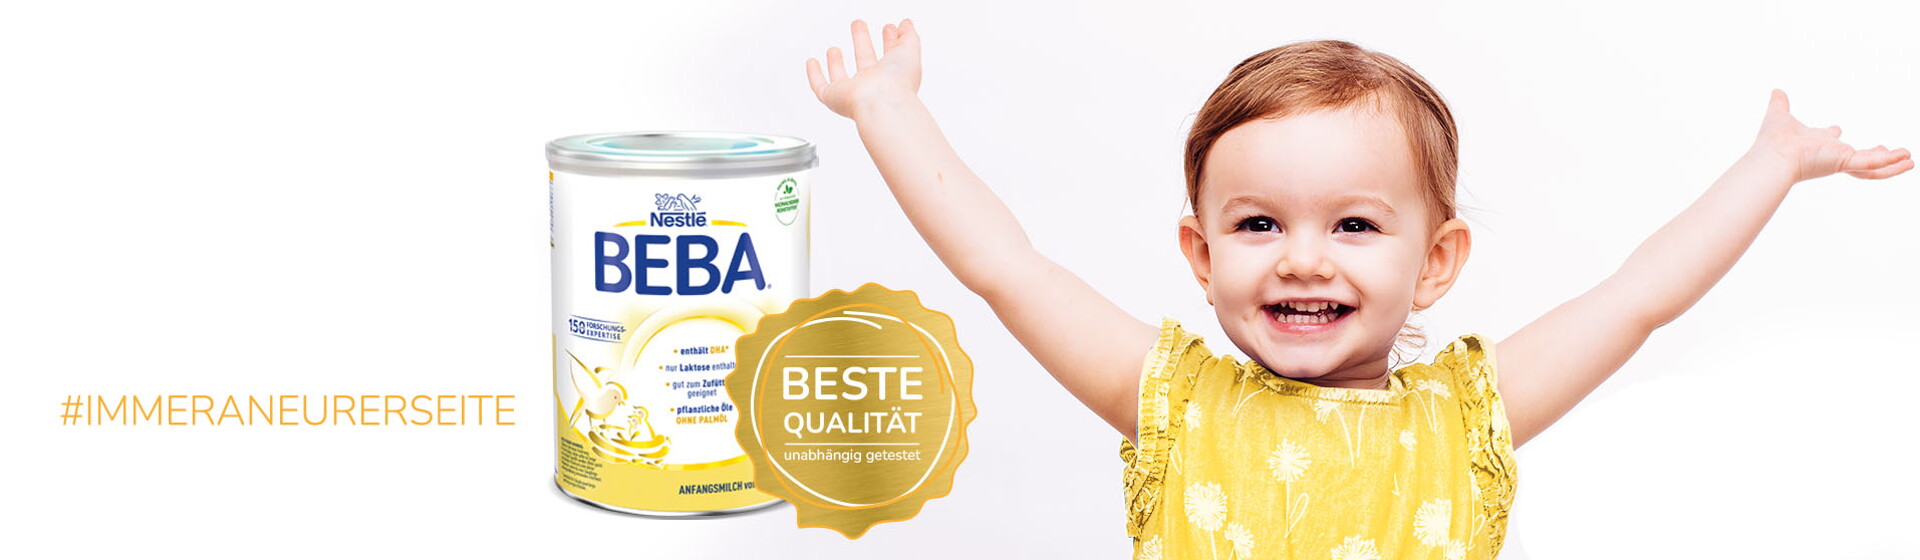 BEBA -Qualität ist unsere oberste Priorität